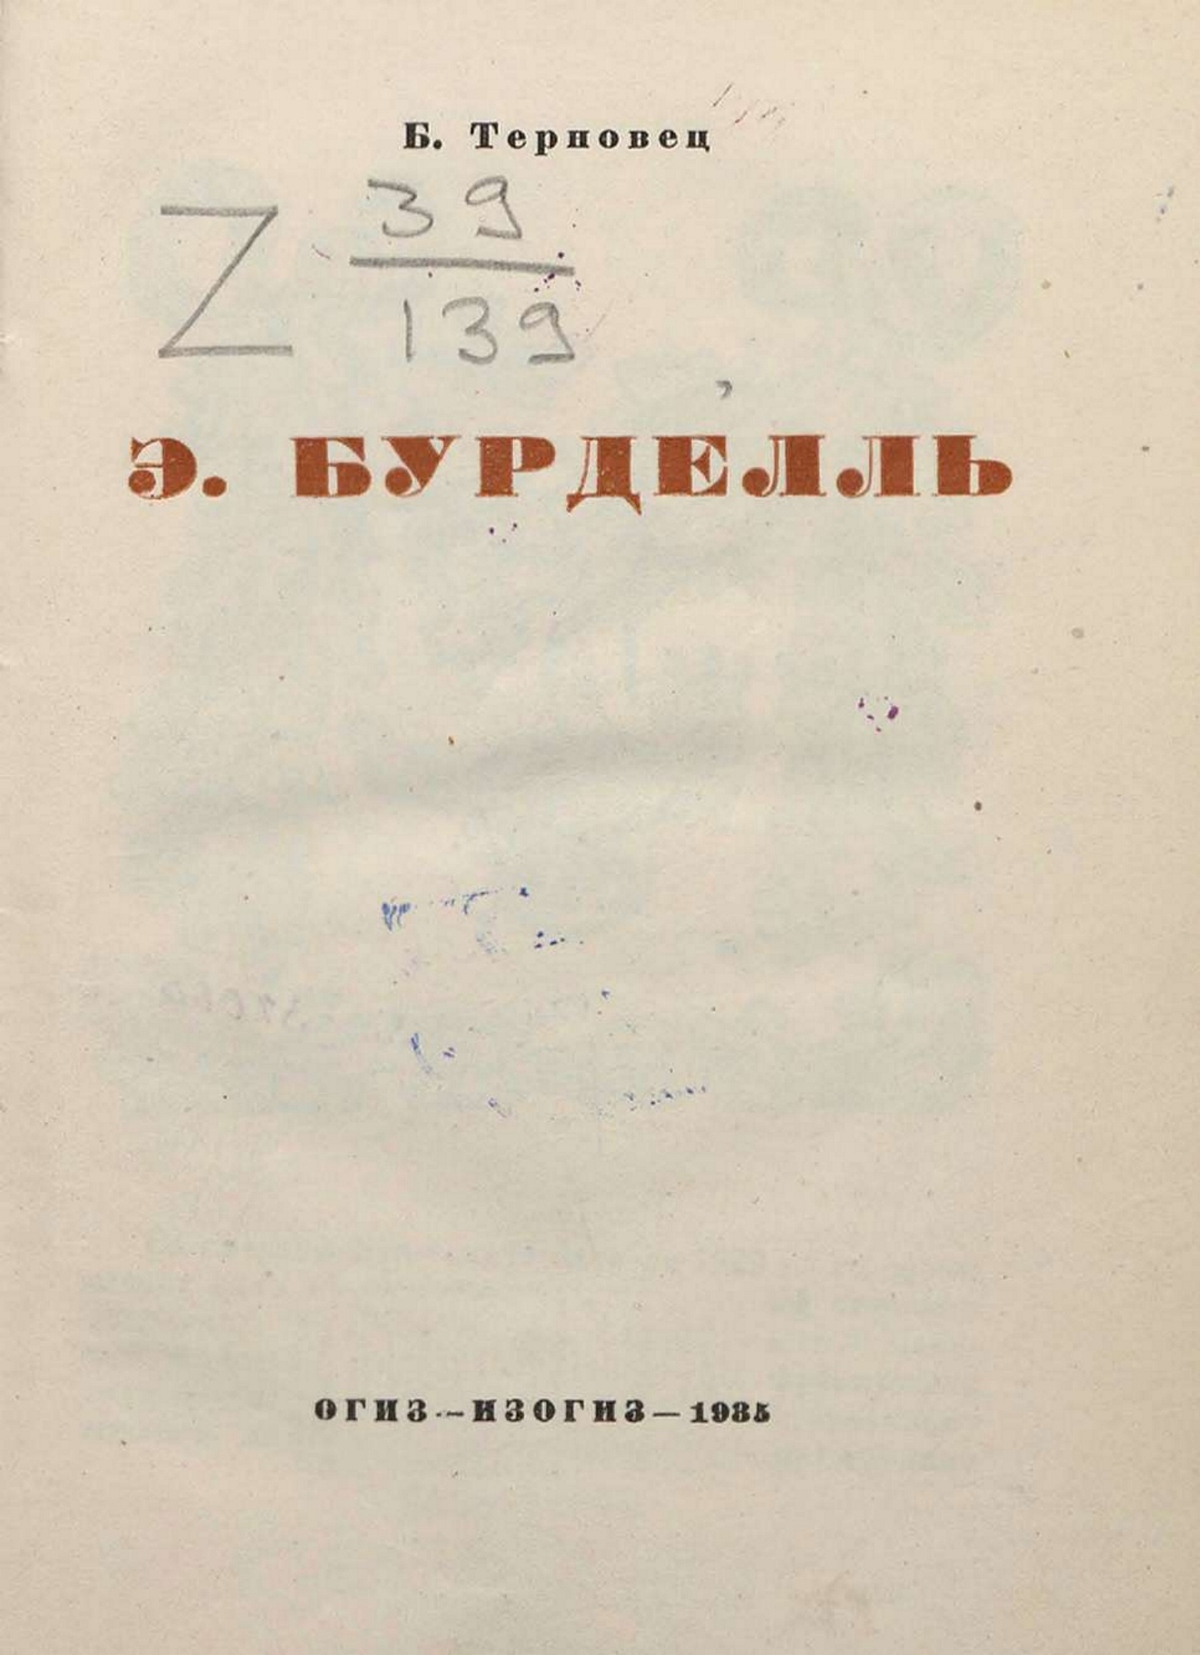 Бурделль / Б. Терновец. — [Москва ; Ленинград] : ОГИЗ — ИЗОГИЗ, 1935